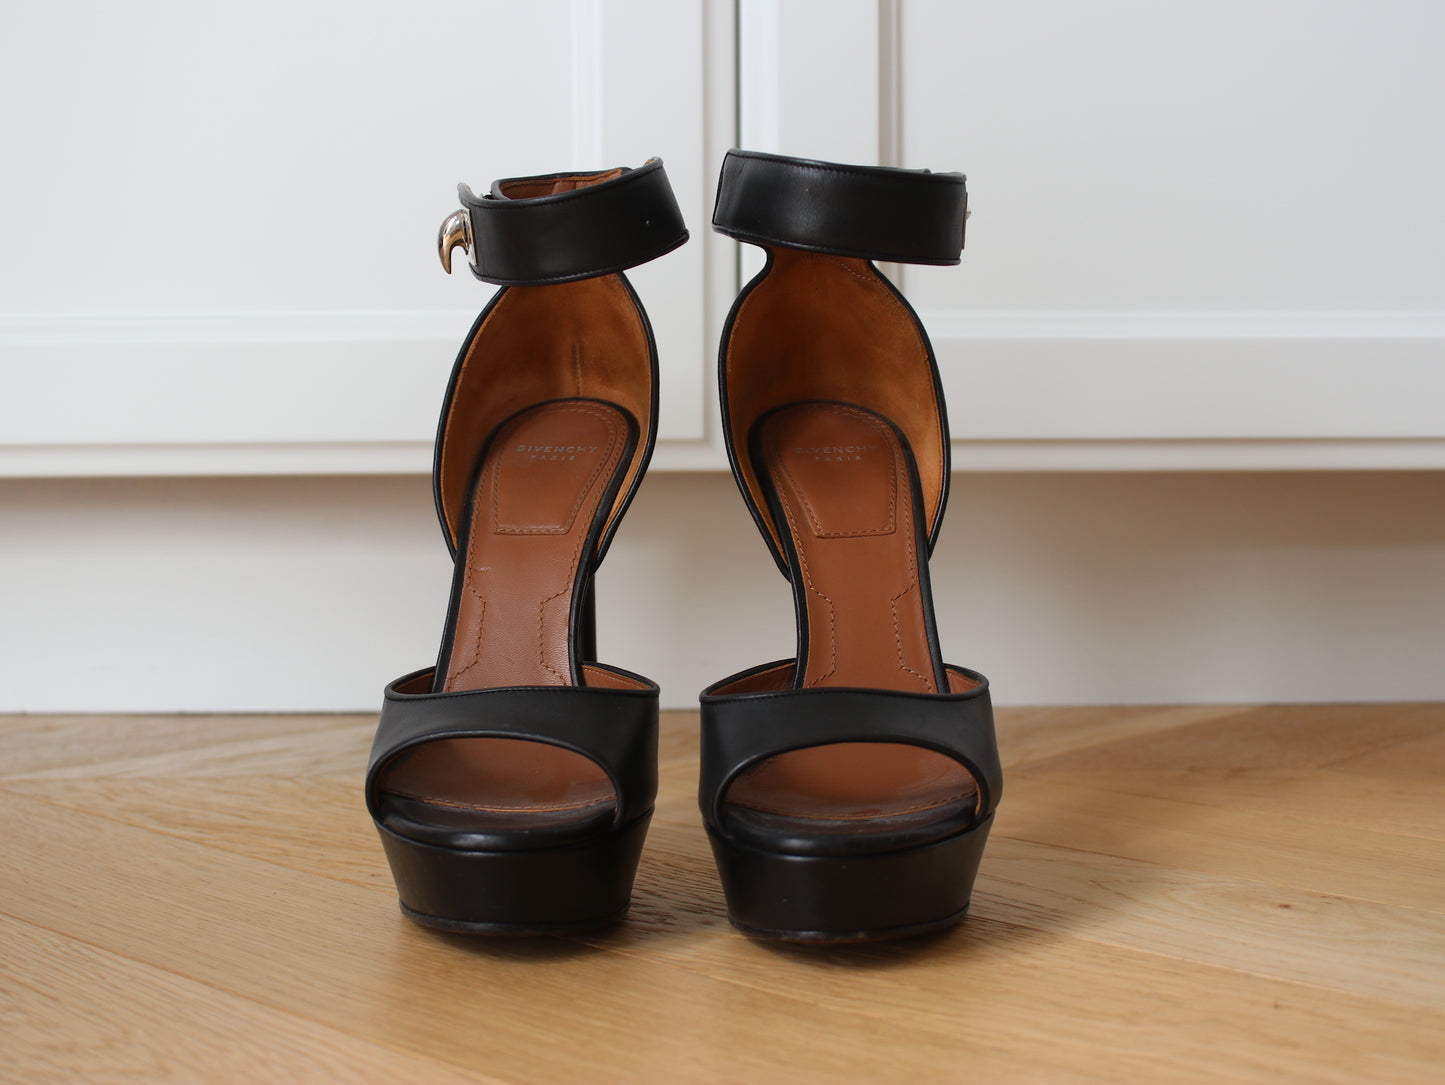 Givenchy Platform Sandals, 38